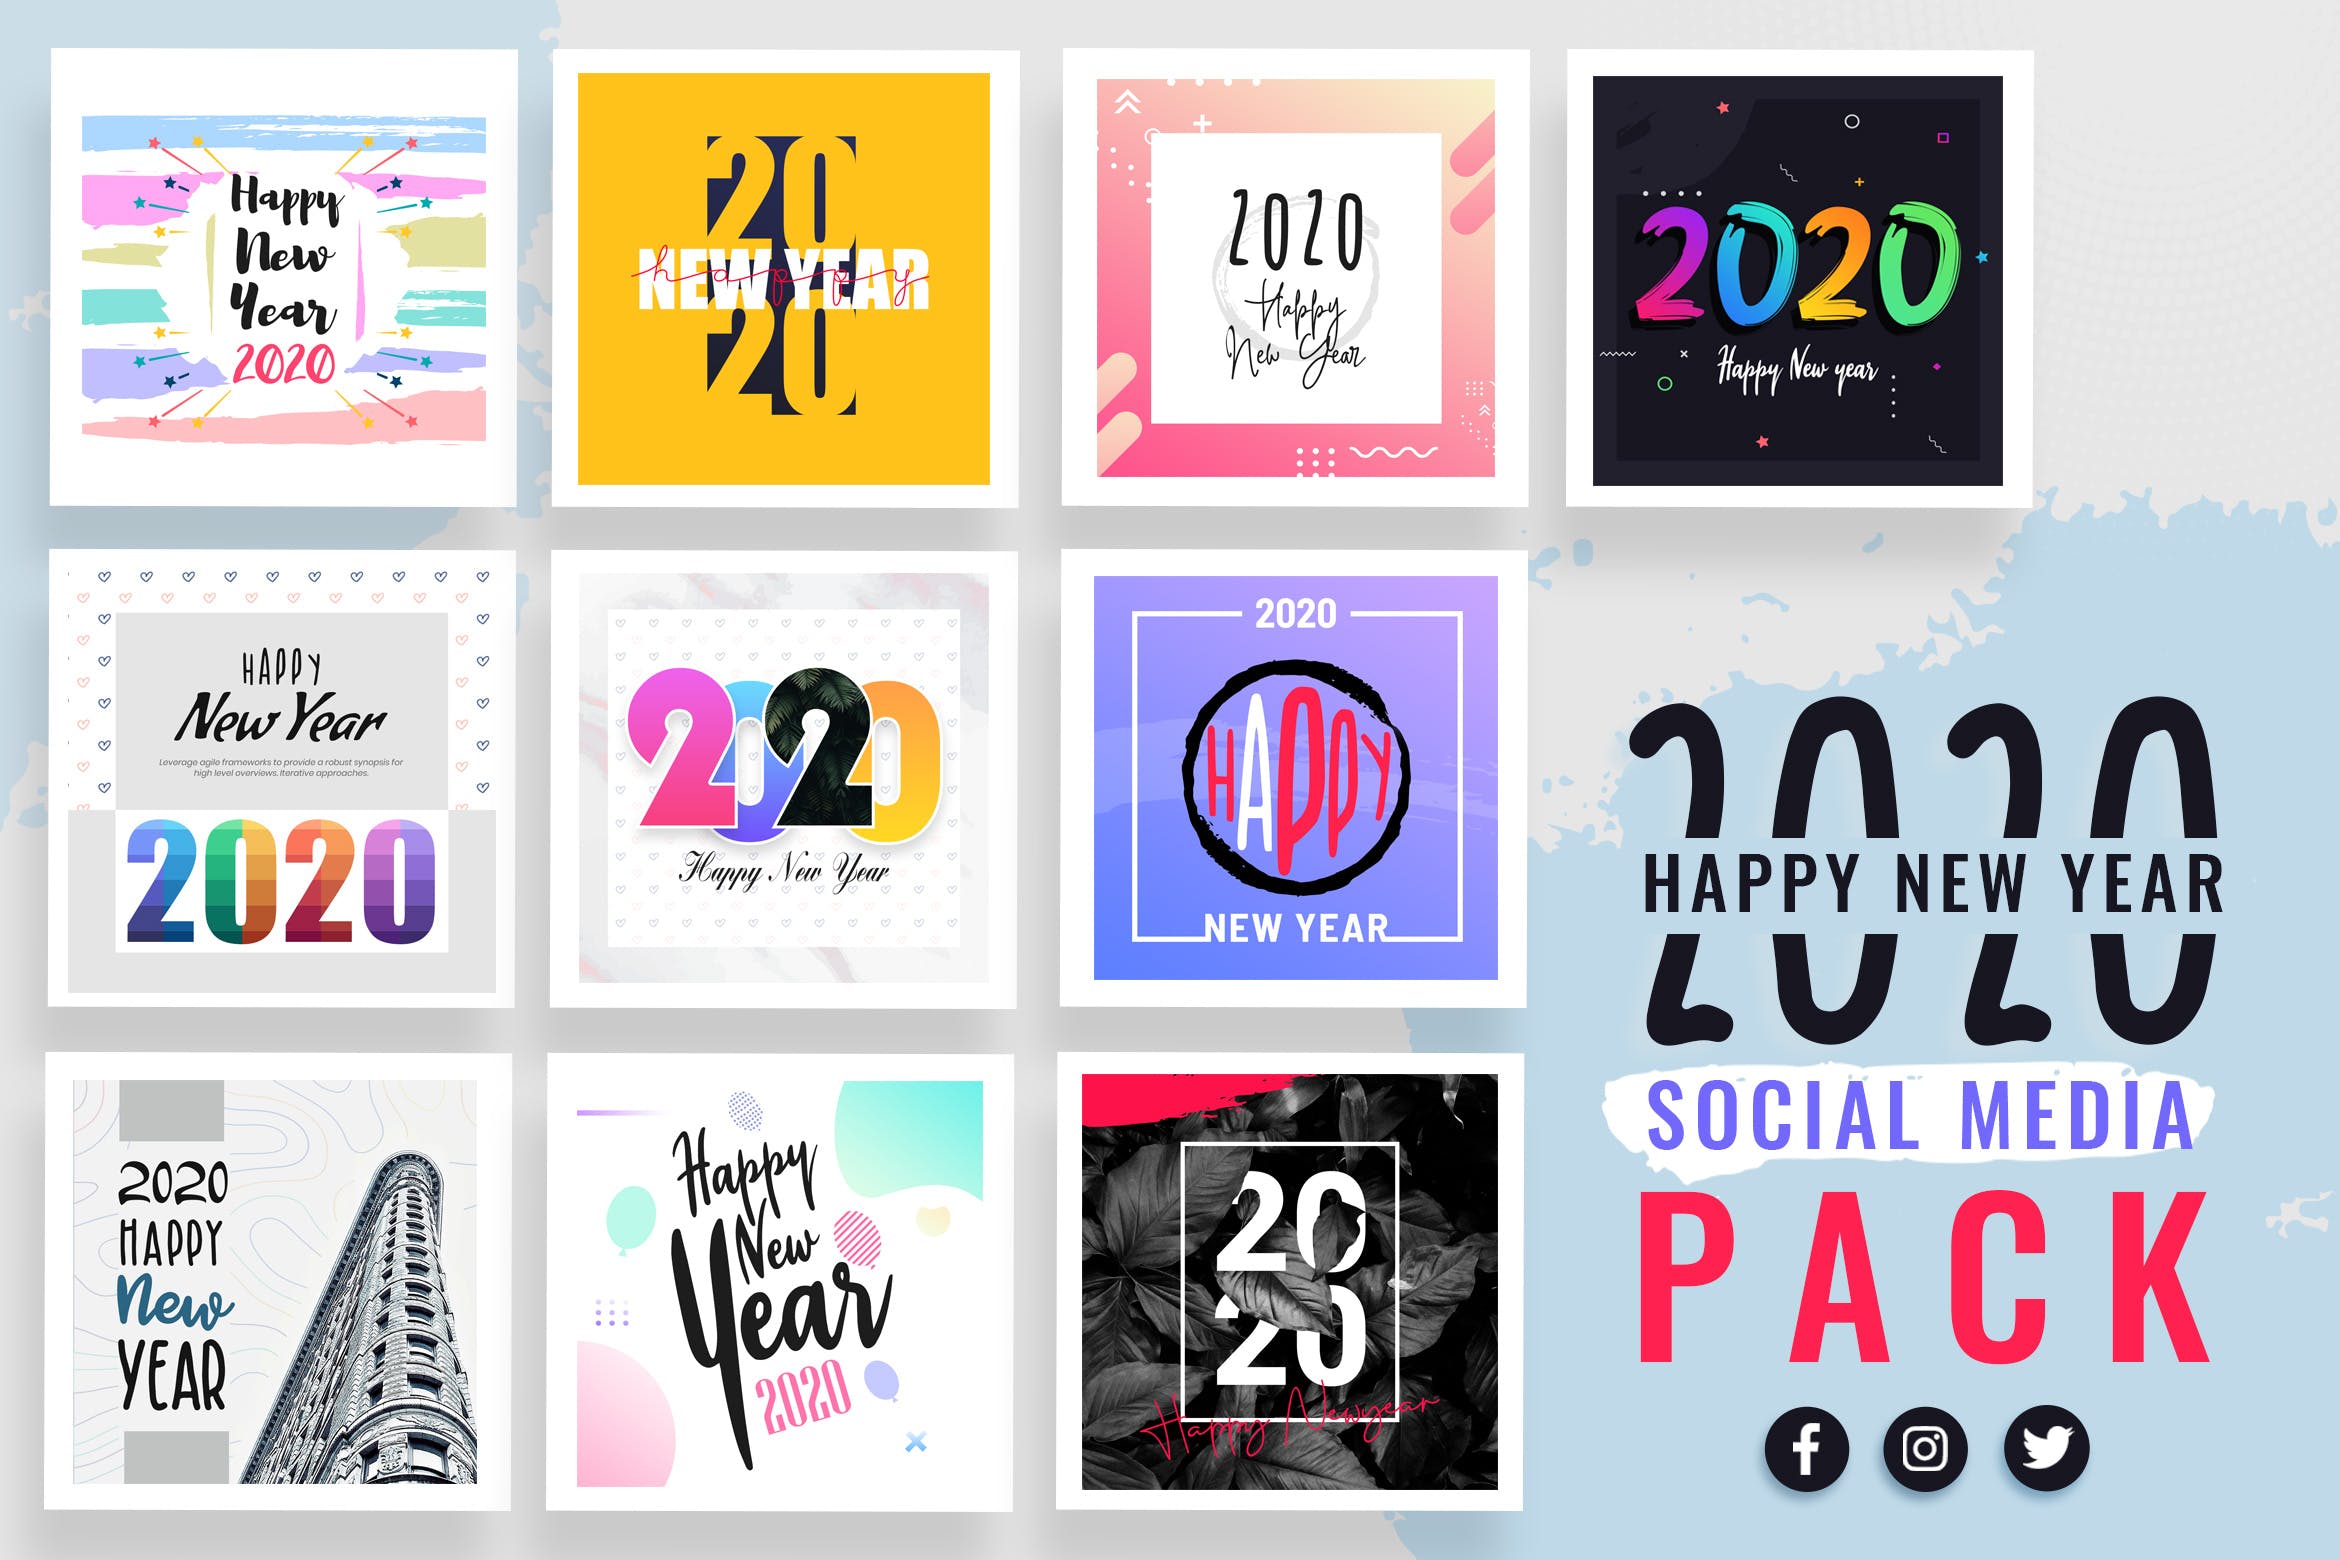 2020年新年主题社交媒体贴图设计模板第一素材精选合集 New Year Social Media Templates 2020插图